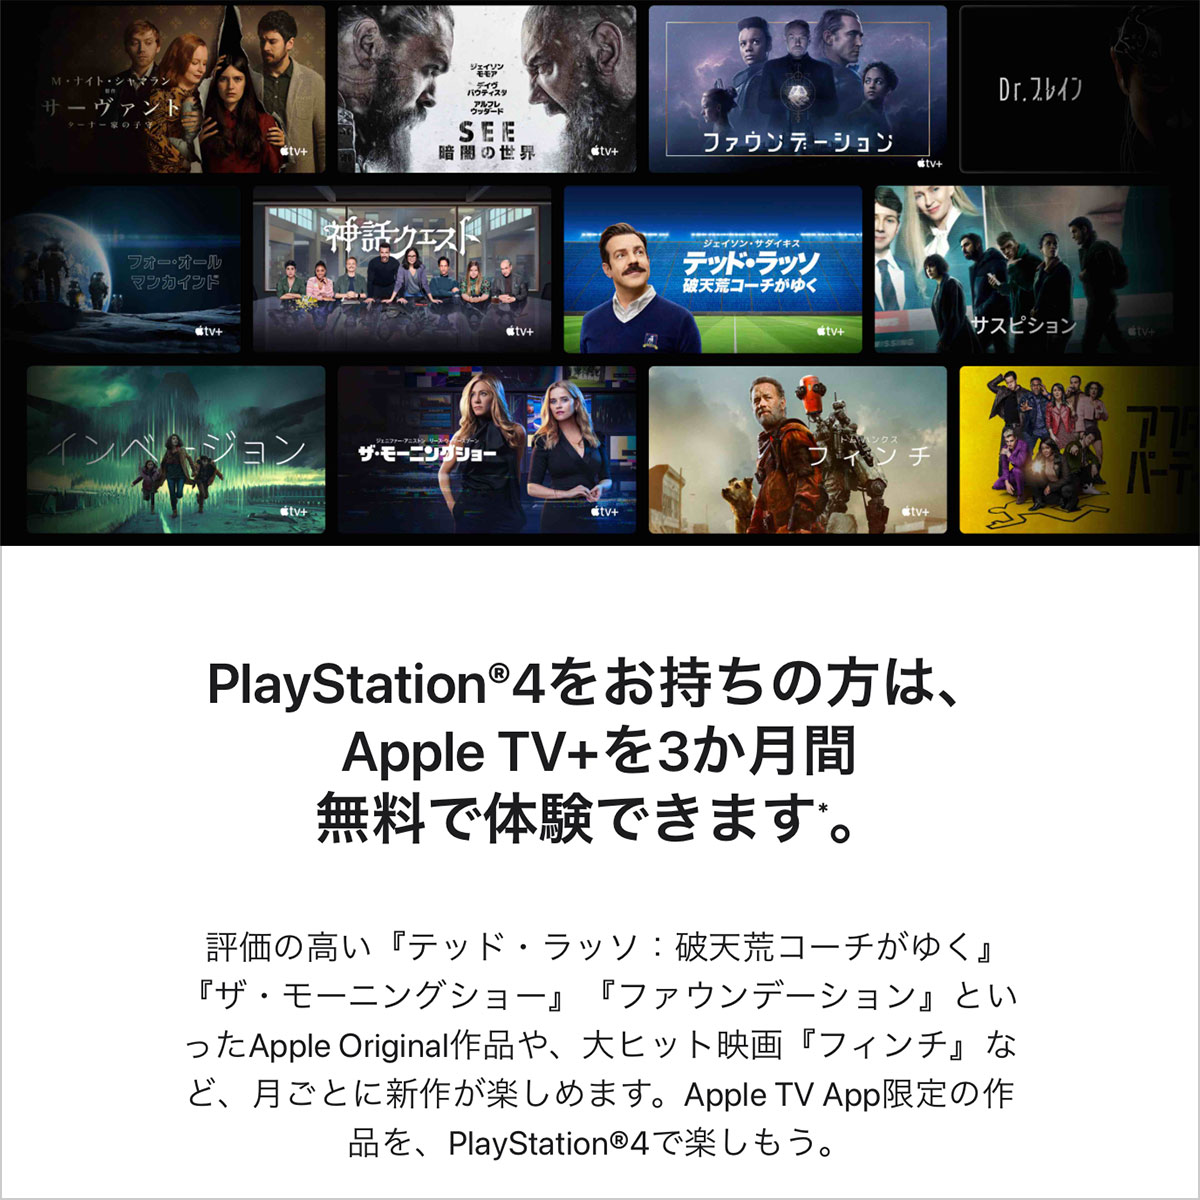 PlayStation 4をお持ちの方は、Apple TV+を3か月間無料で体験できます。